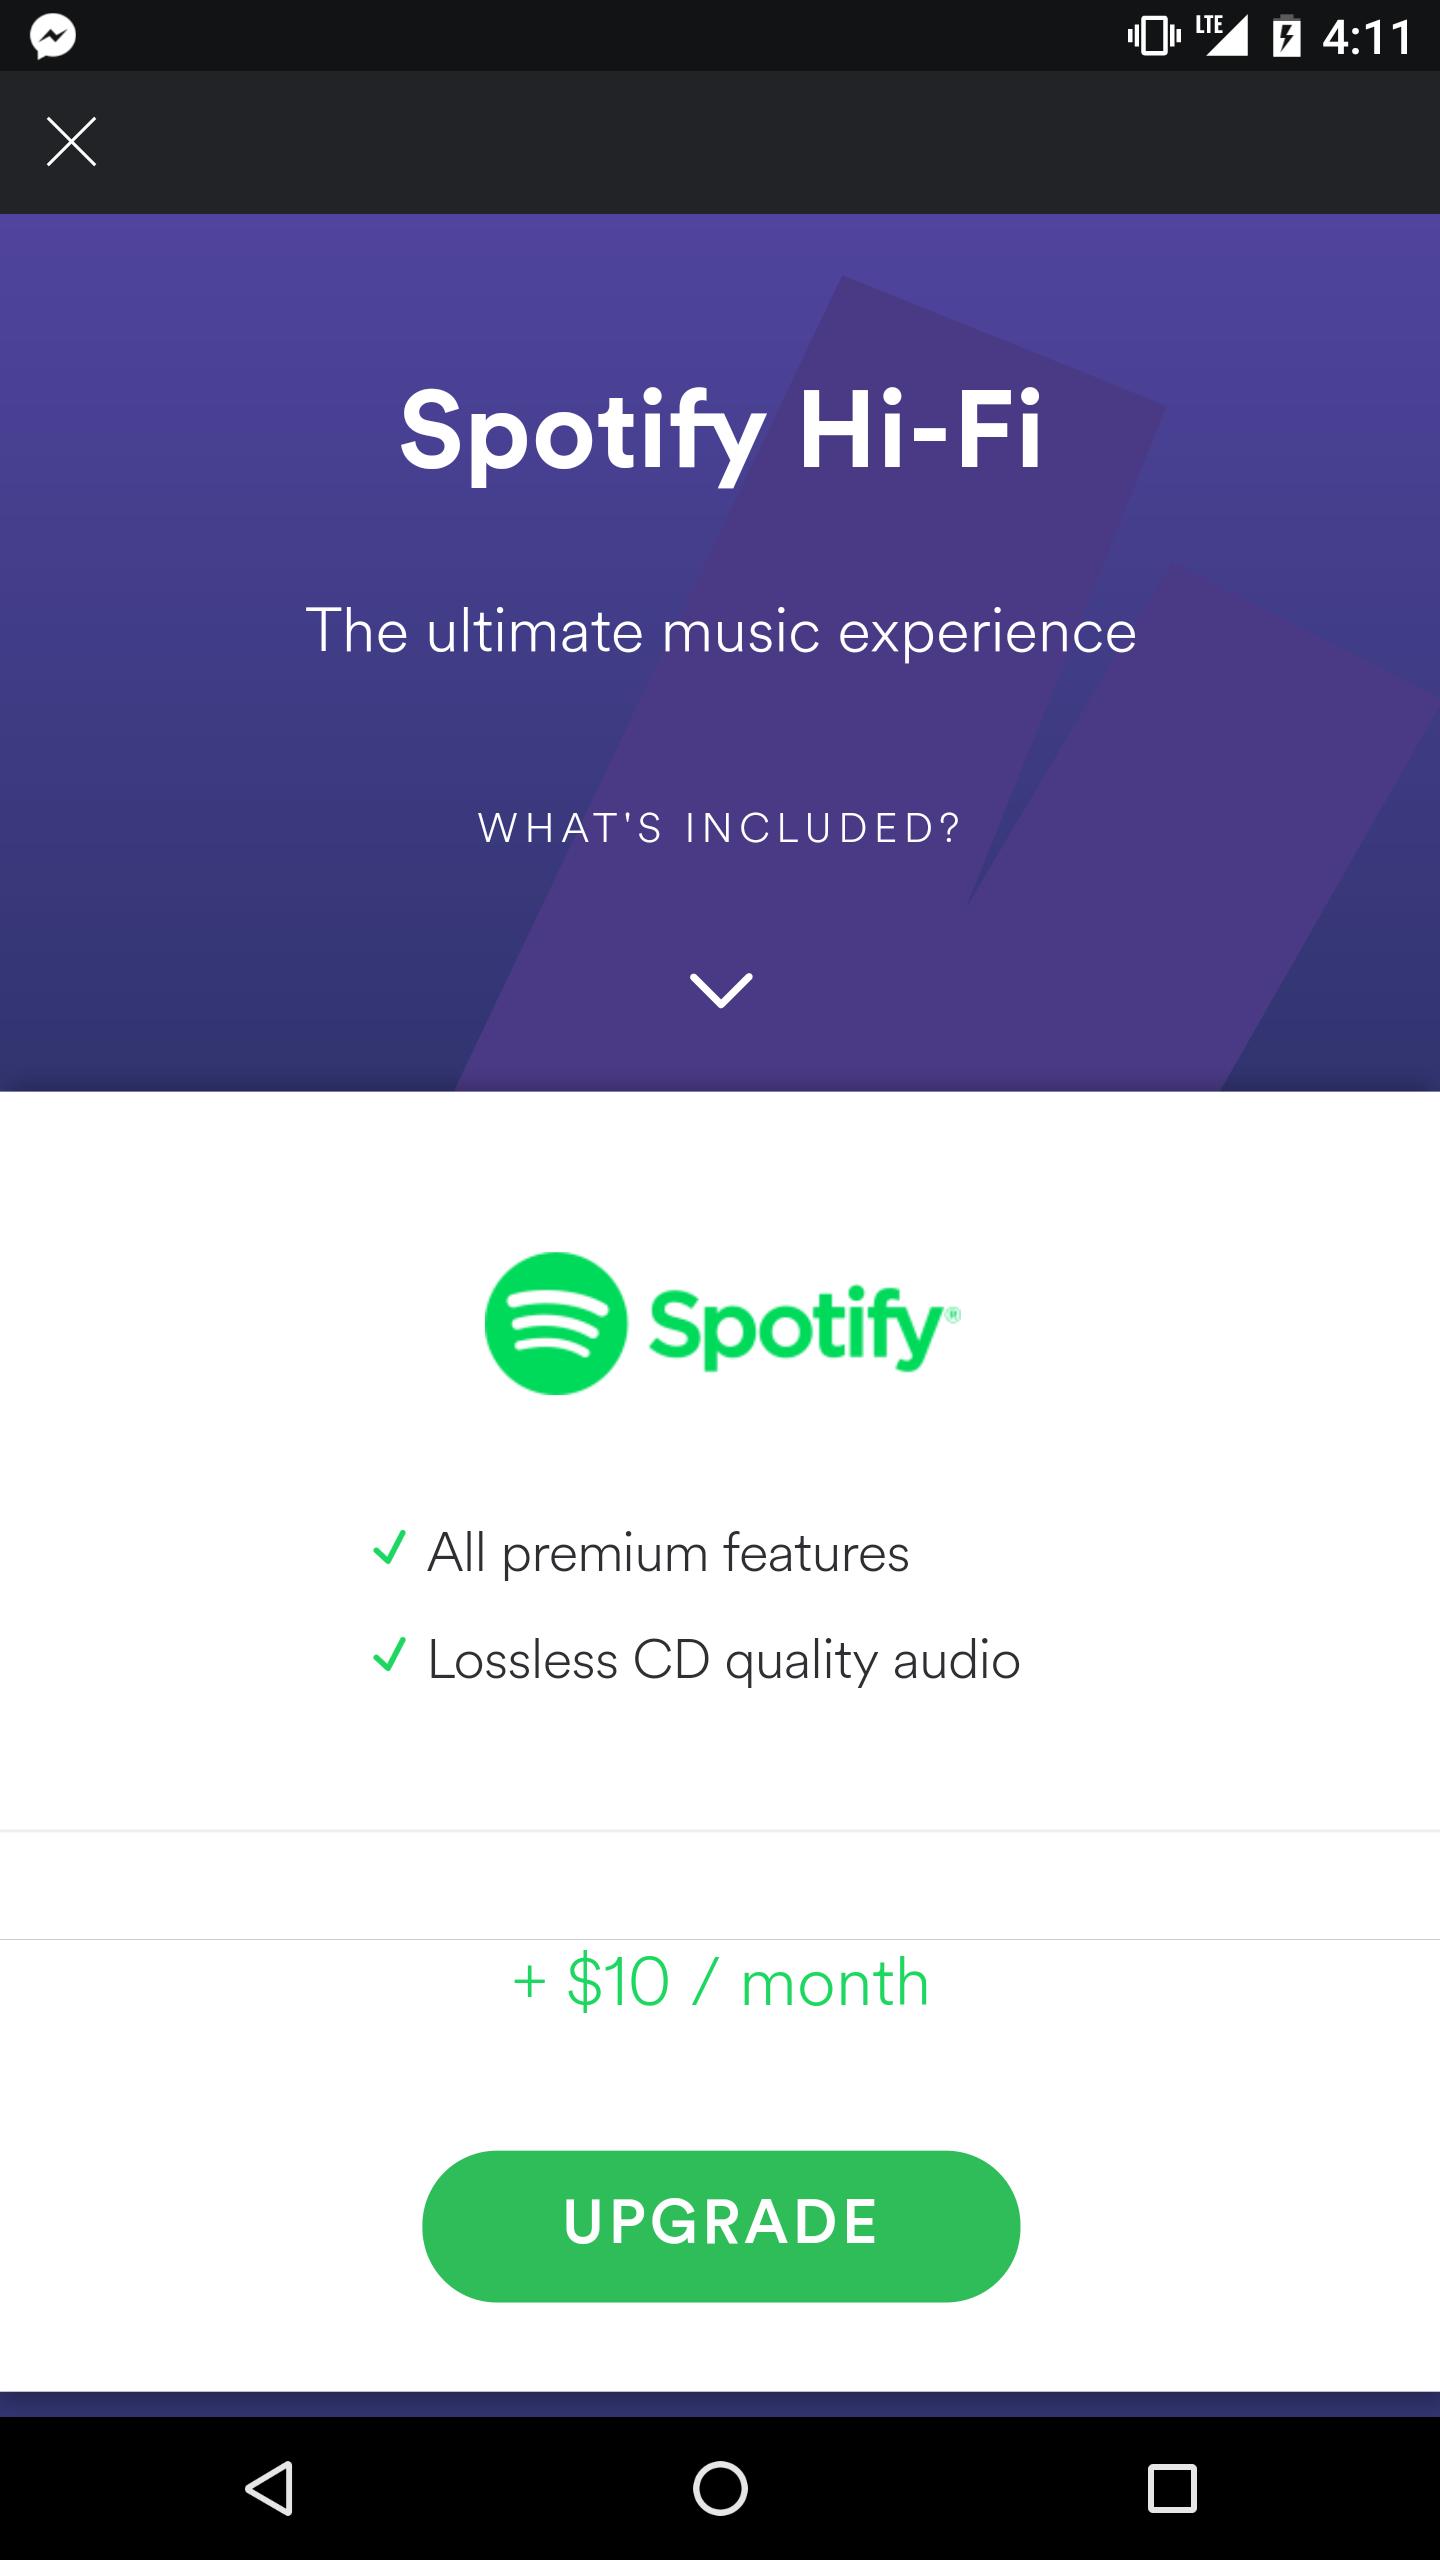 Dette bildet ble lagt ut på Reddit, og ser ut til å bevise at Spotify planlegger et Hi-Fi-tilbud.